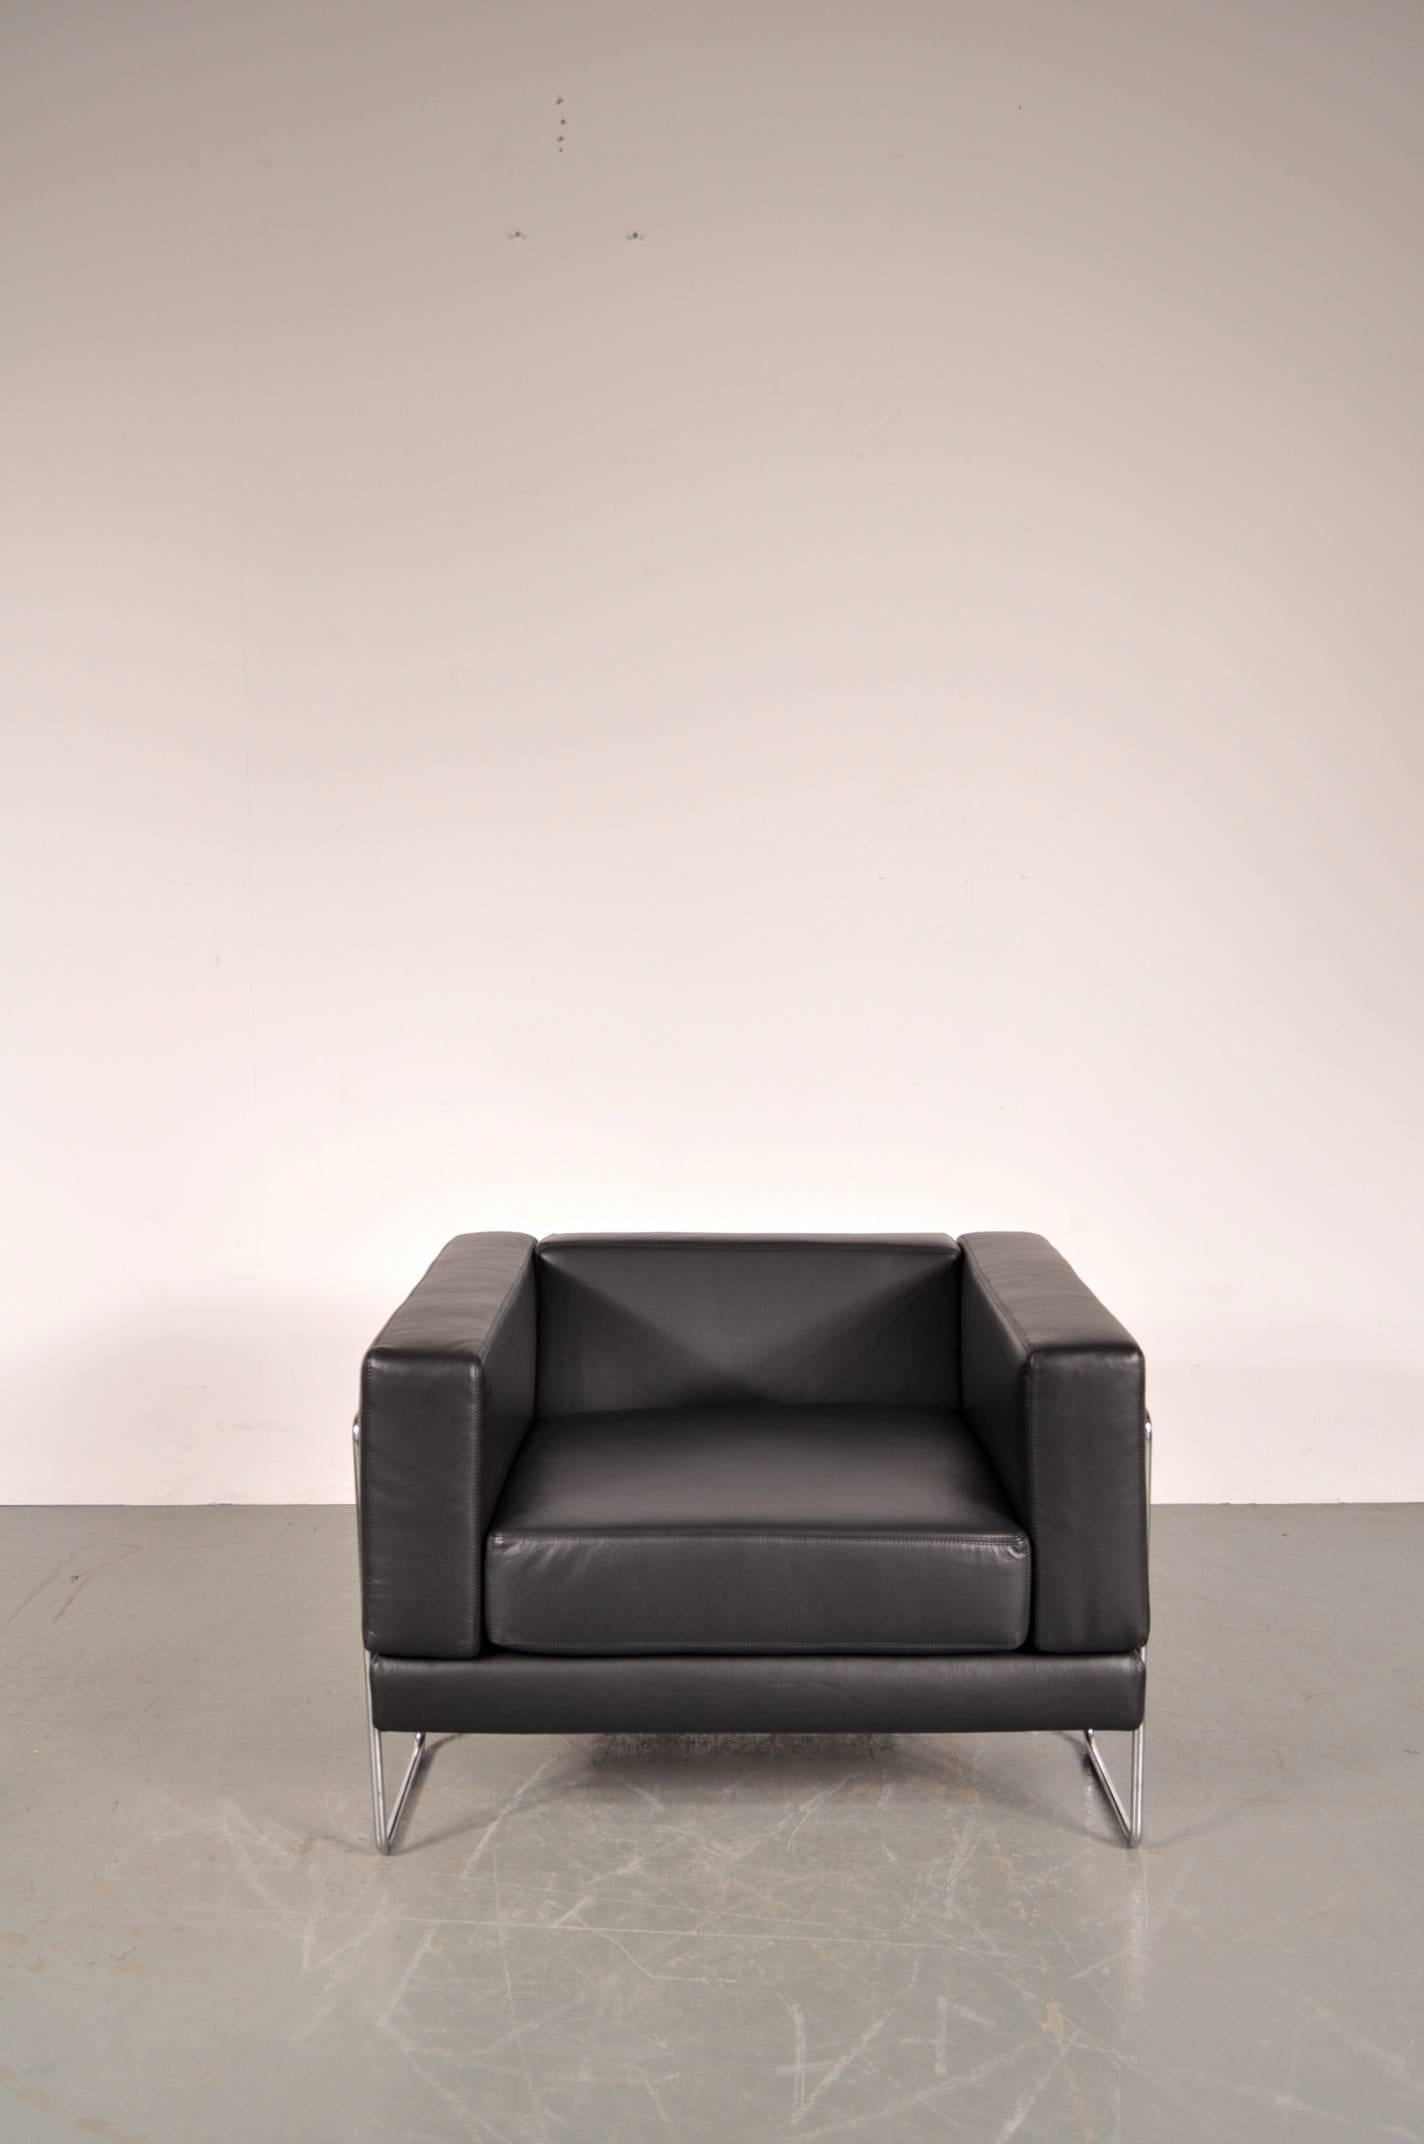 Magnifique fauteuil de salon conçu par Kwok Hoï Chan, fabriqué par Steiner en France en 1969.

Cette chaise est nouvellement recouverte d'un cuir noir de qualité exceptionnelle. Son cadre en métal chromé est clairement visible, créant un design